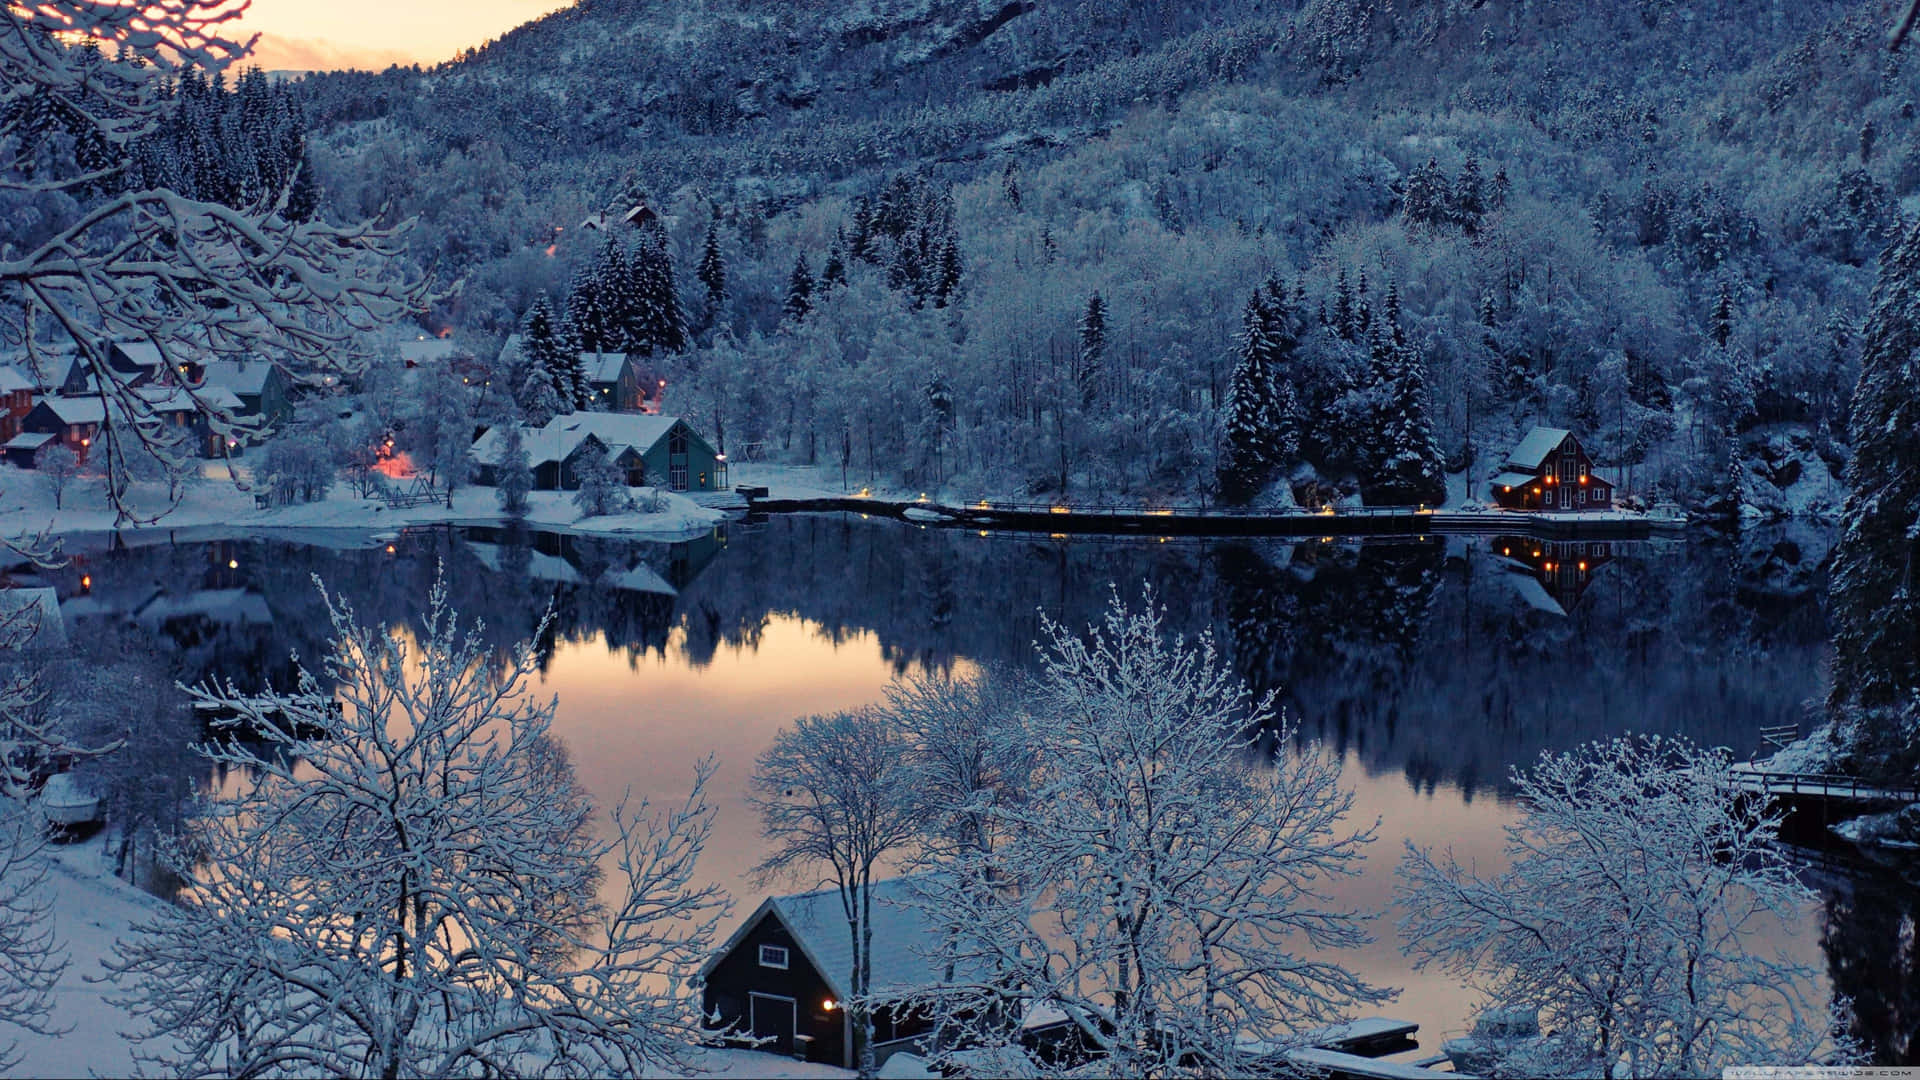 Alberisempreverdi Coperti Di Neve E Lago Ghiacciato Donano Bellezza A Una Fredda Giornata D'inverno. Sfondo